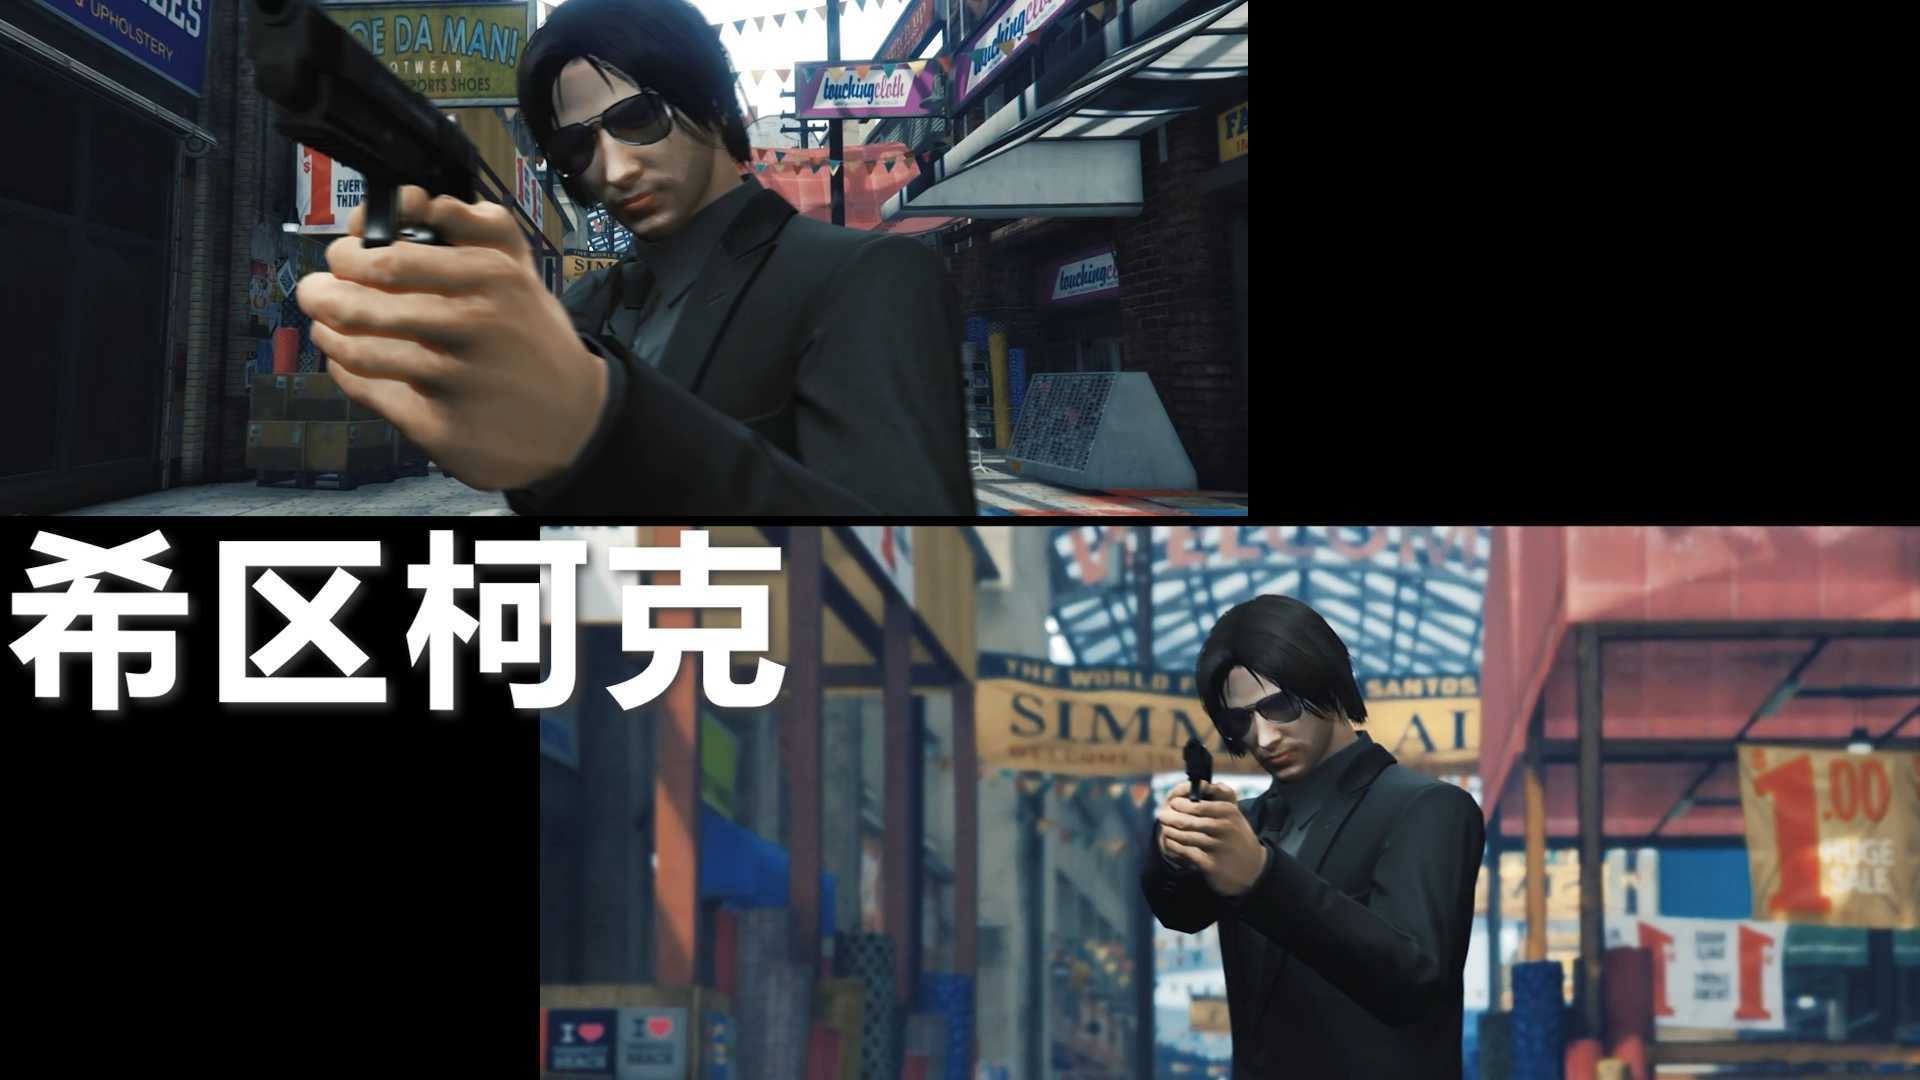 这几种运镜在游戏里也能还原:Rockstar编辑器(GTA5)CG动画